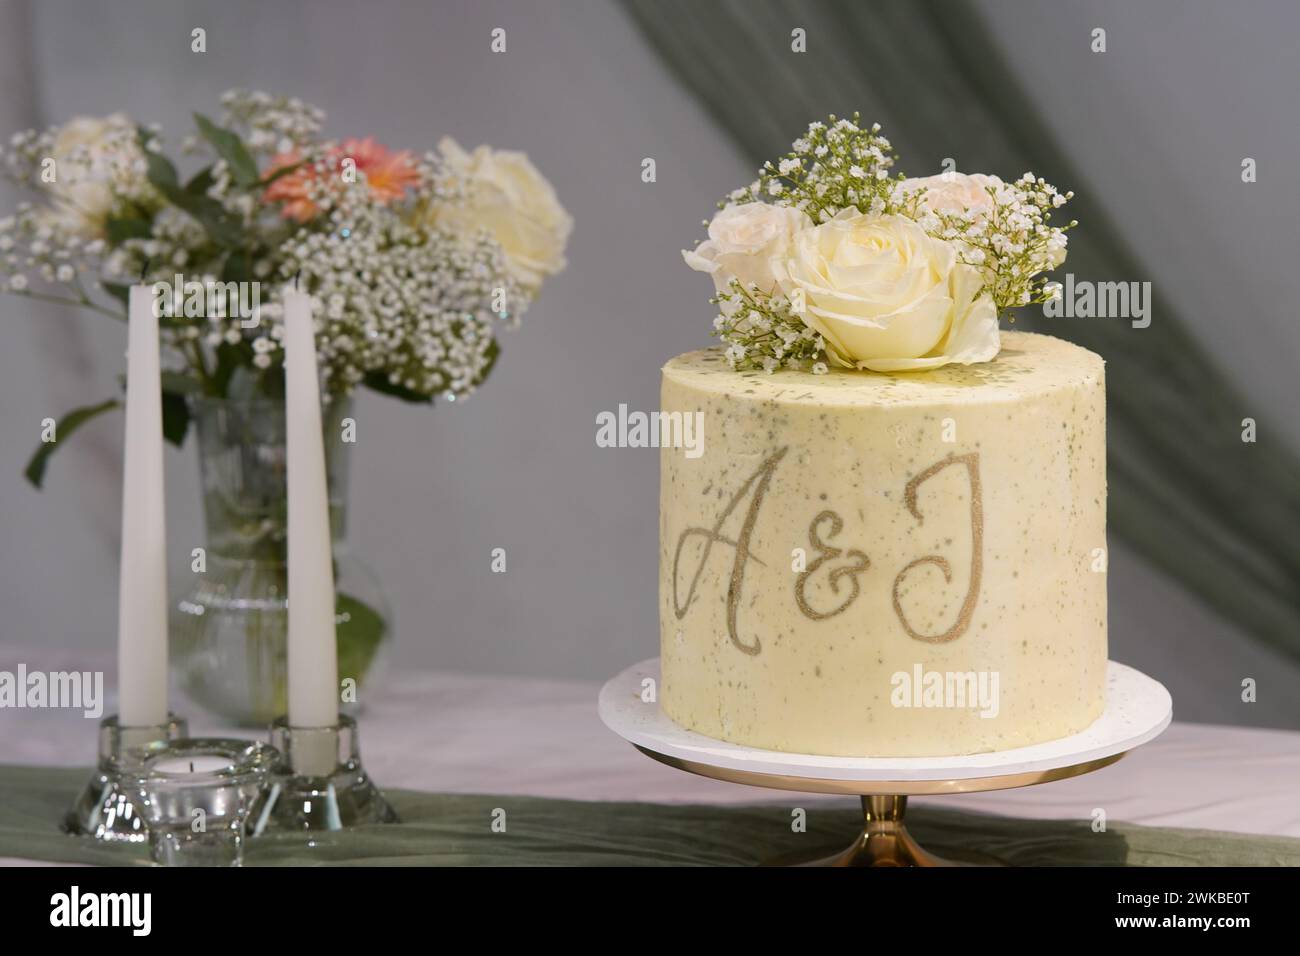 Le gâteau de mariage orné de fleurs délicates et arborant les initiales A&J ou A&I ajoute une touche élégante à la célébration. Banque D'Images